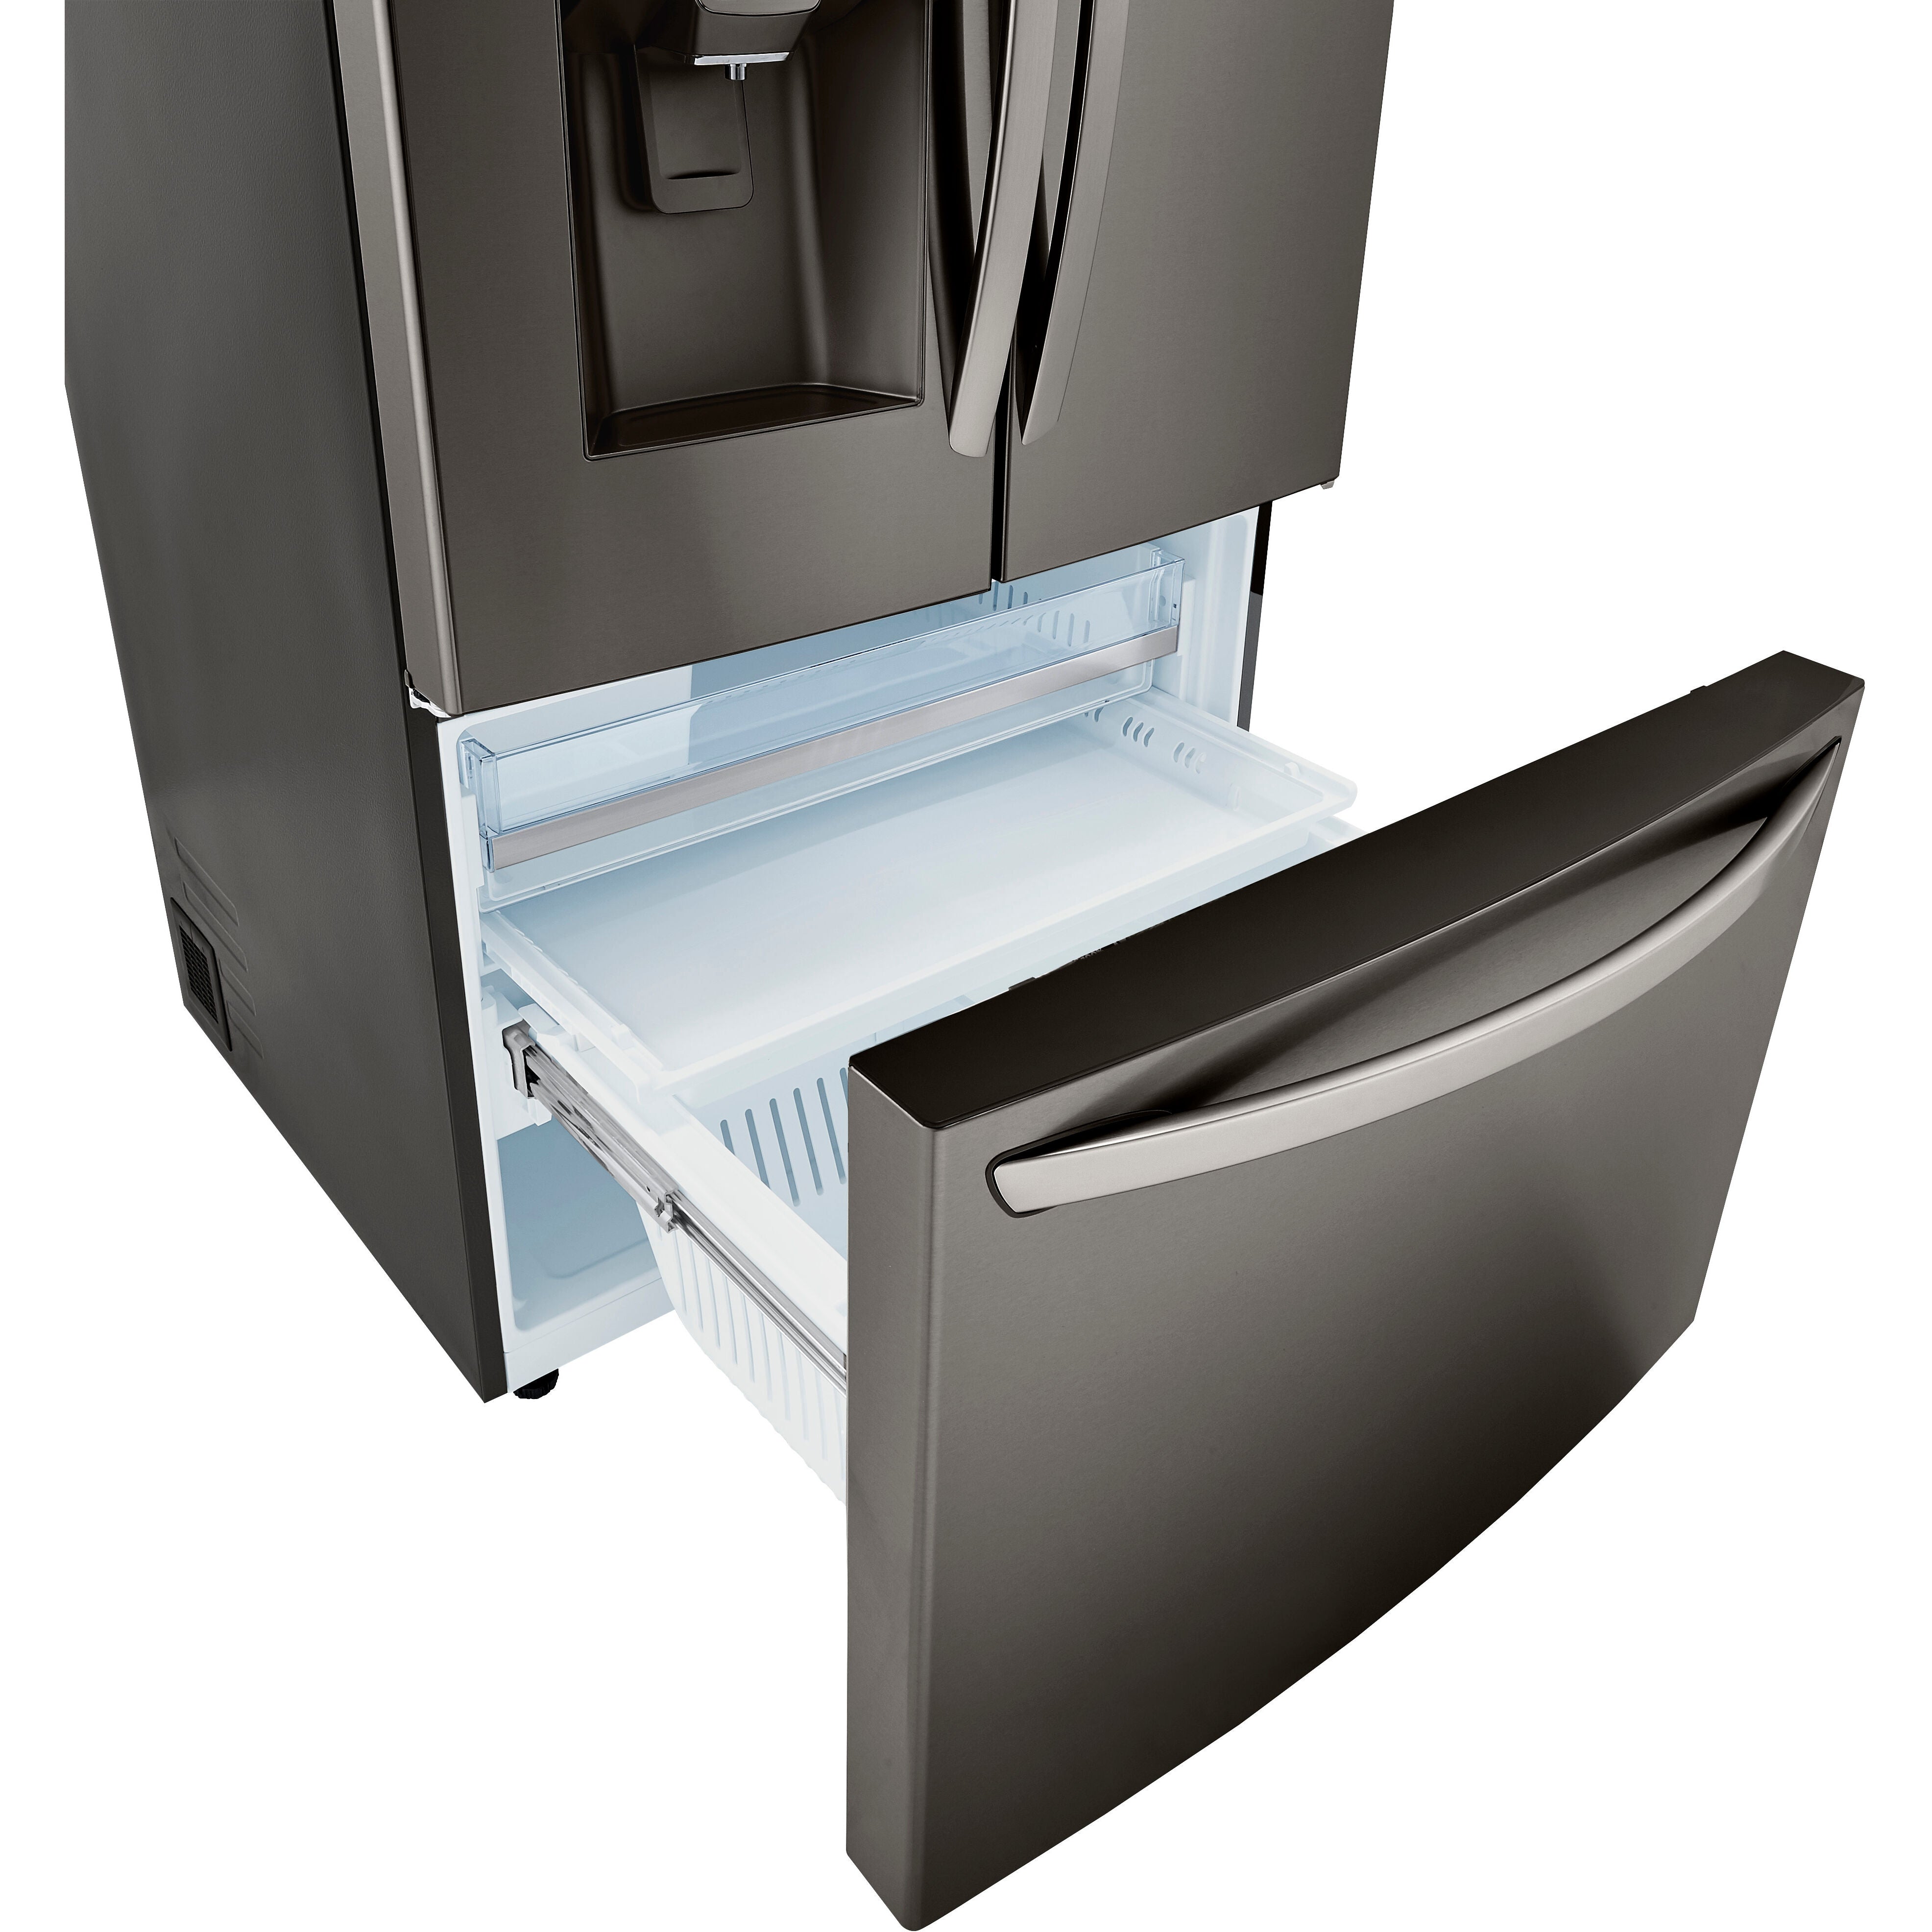 LG 36 Inch 3-Door French Door Refrigerator in Black Stainless Steel 30 Cu. Ft. (LRFDS3016D)